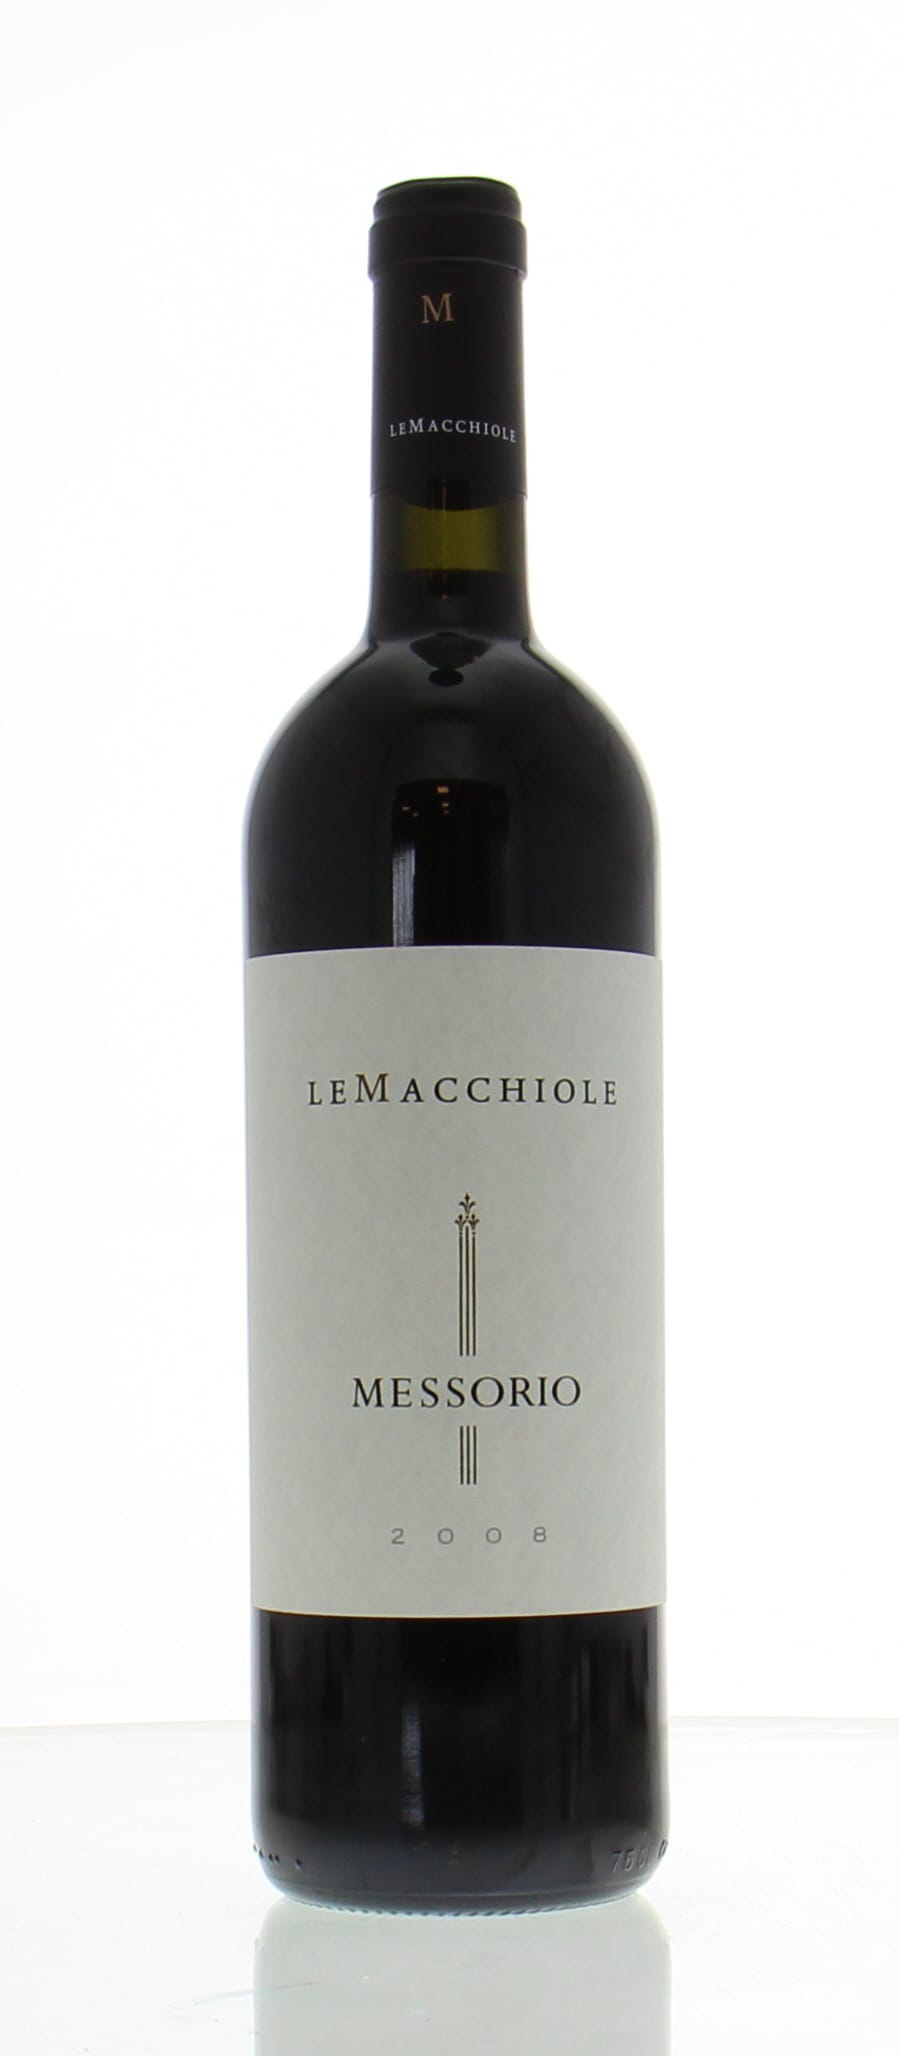 Le Macchiole - Messorio 2008 From Original Wooden Case